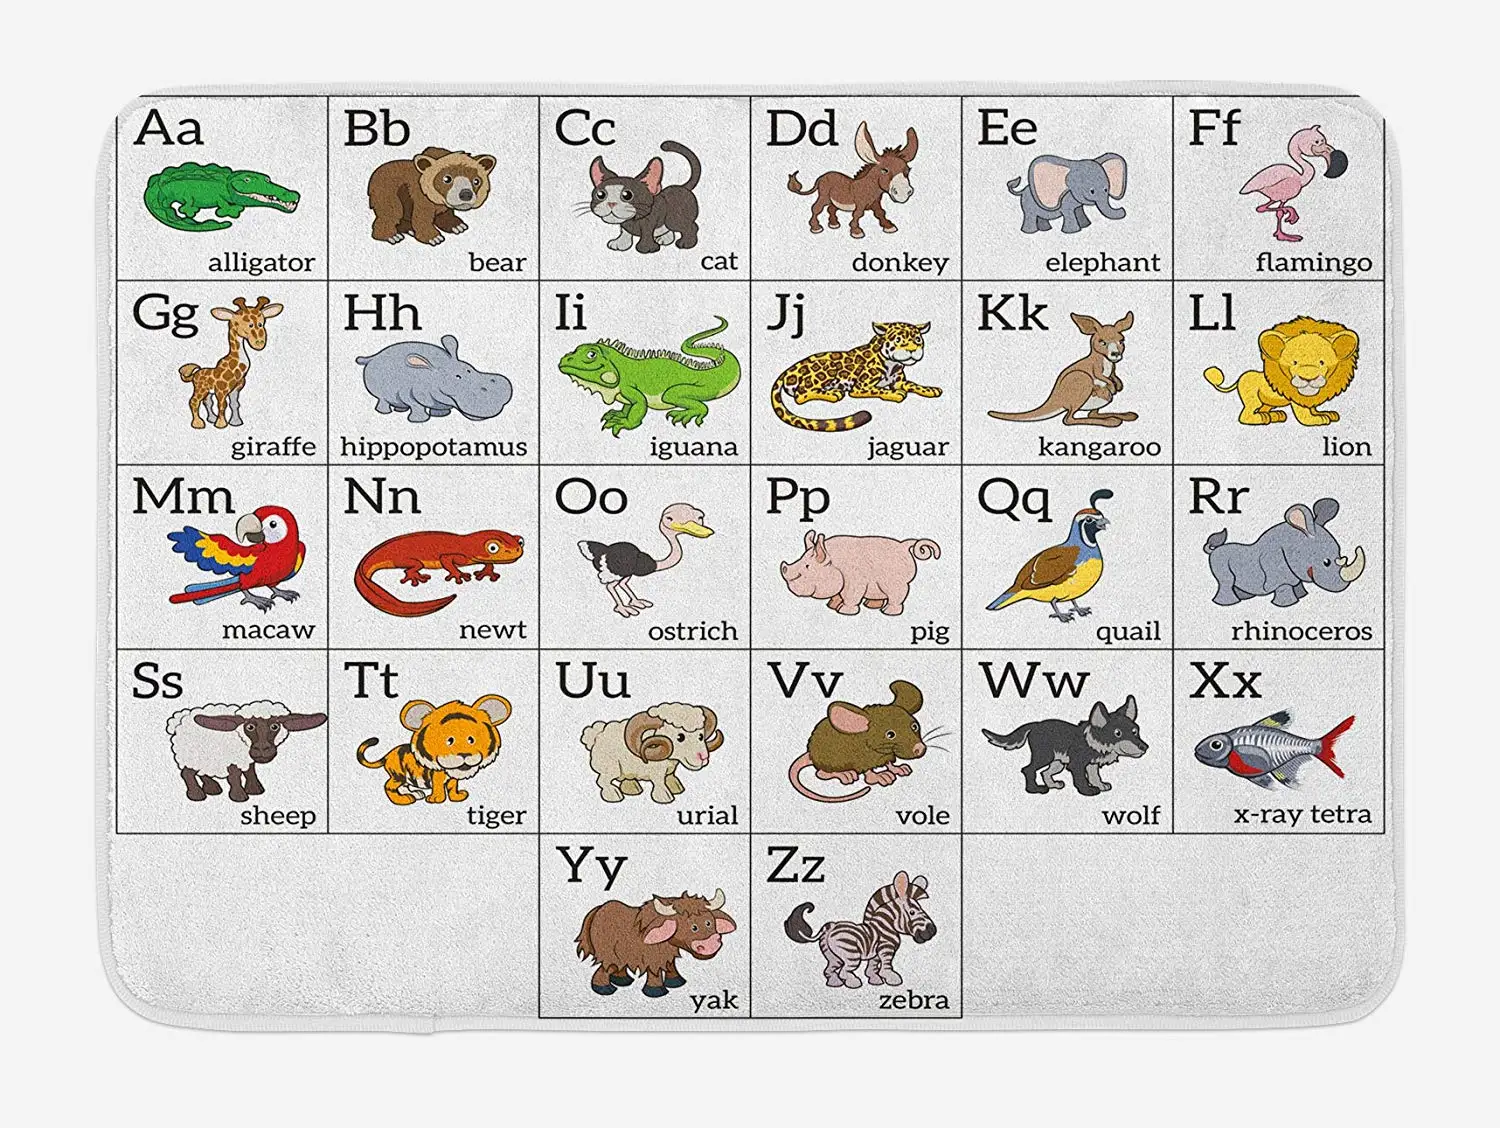 Названия на букву n. Животные на английском. Животные на английском по алфавиту. Названия животных на английском для детей. Карточки по английскому для детей животные.